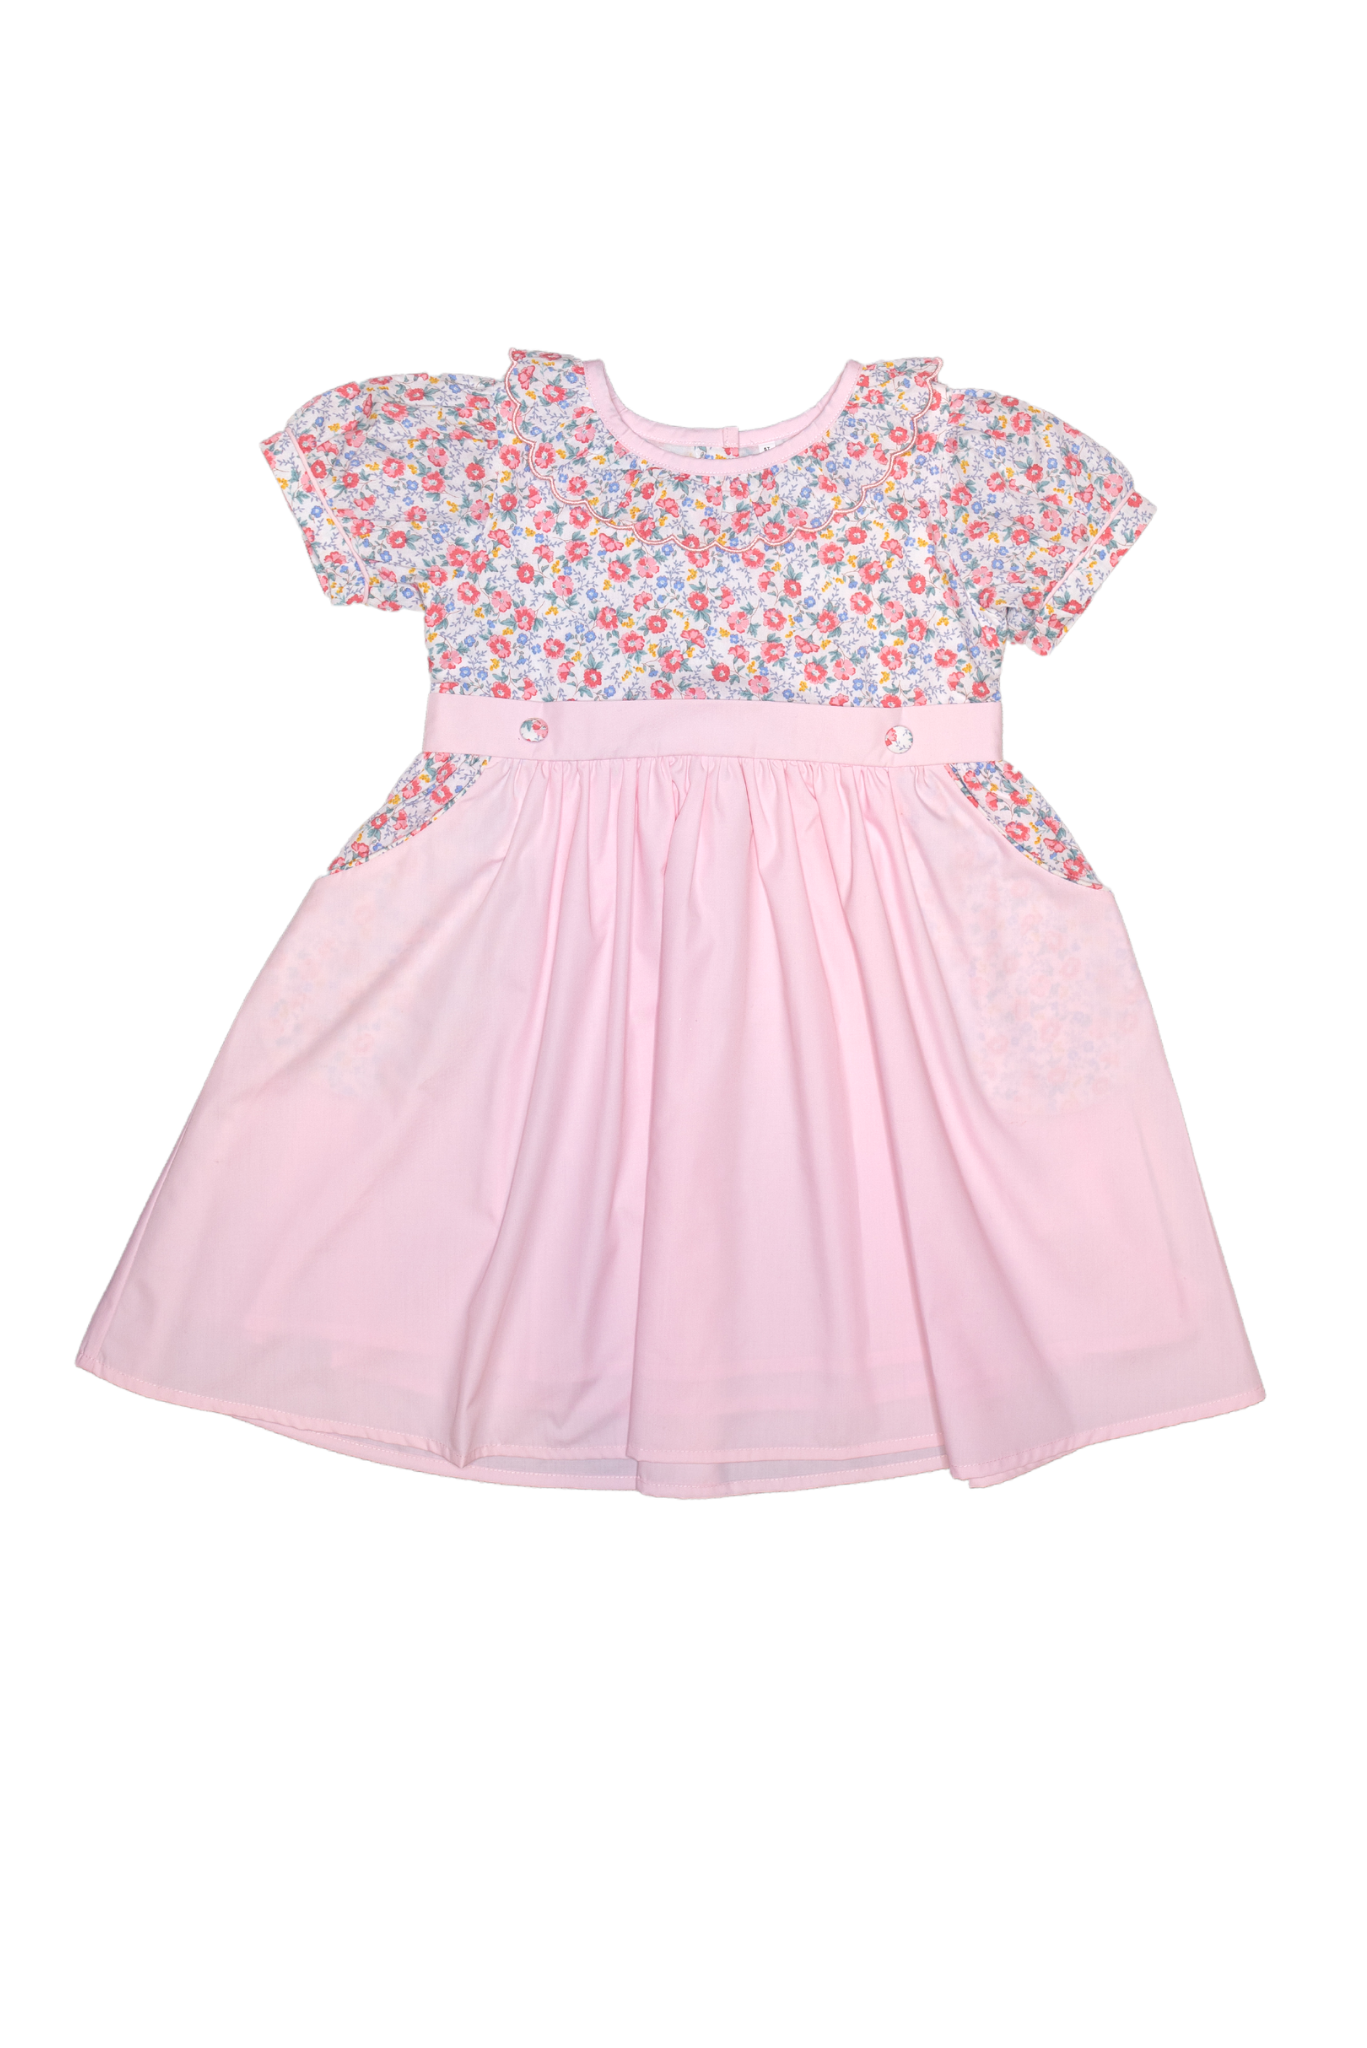 Pink Floral Short Sleeve Spring Dress